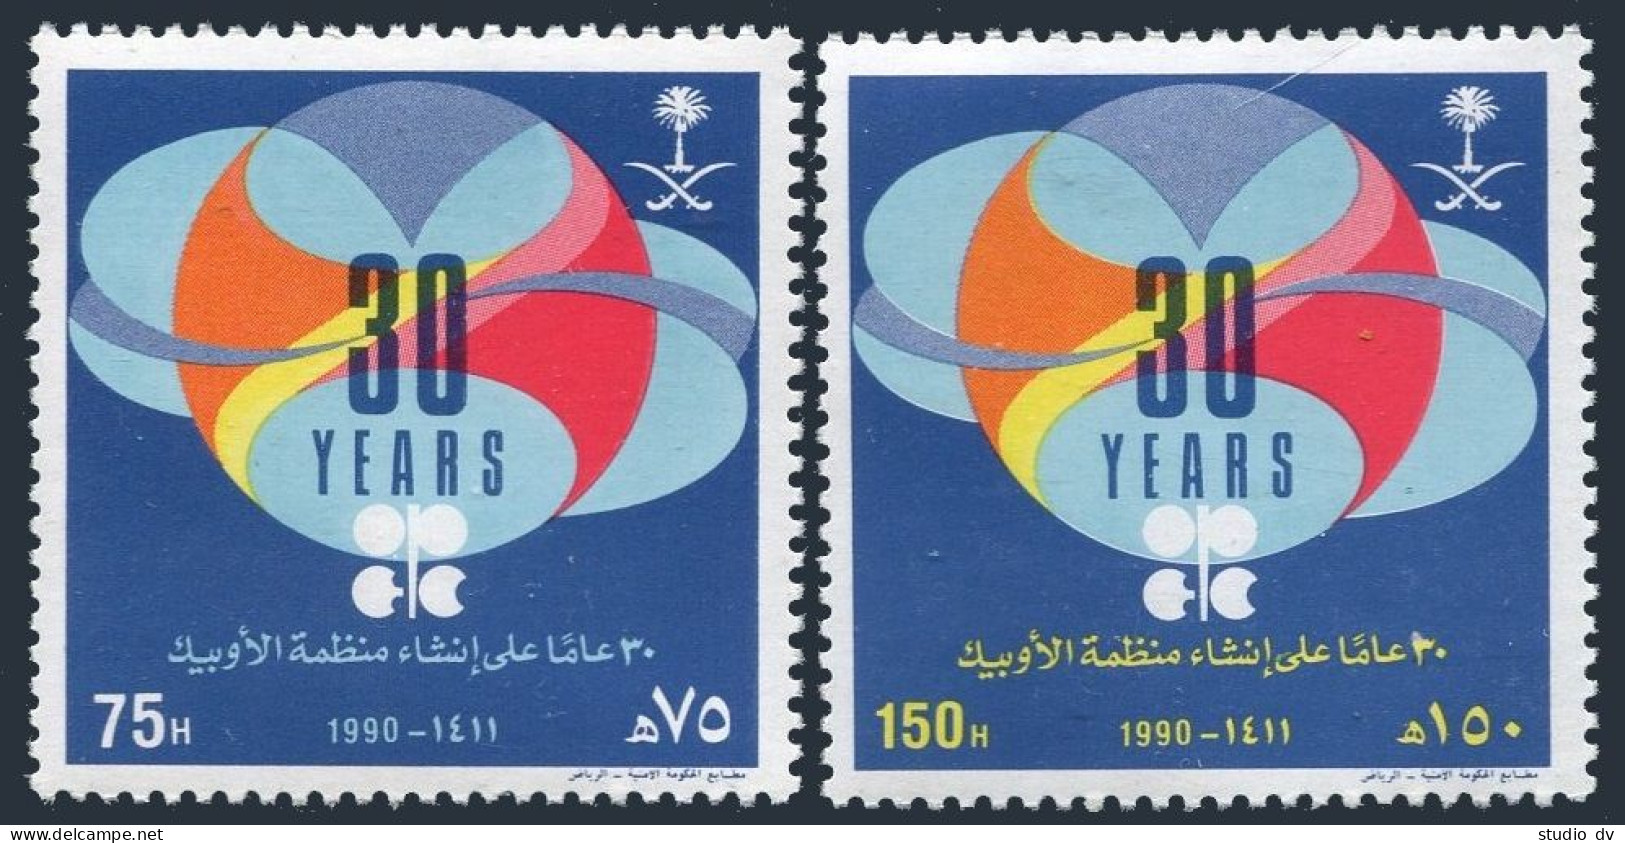 Saudi Arabia 1136-1137, MNH. Michel 1054-1055. OPEC, 30th Ann. 1990.  - Arabie Saoudite